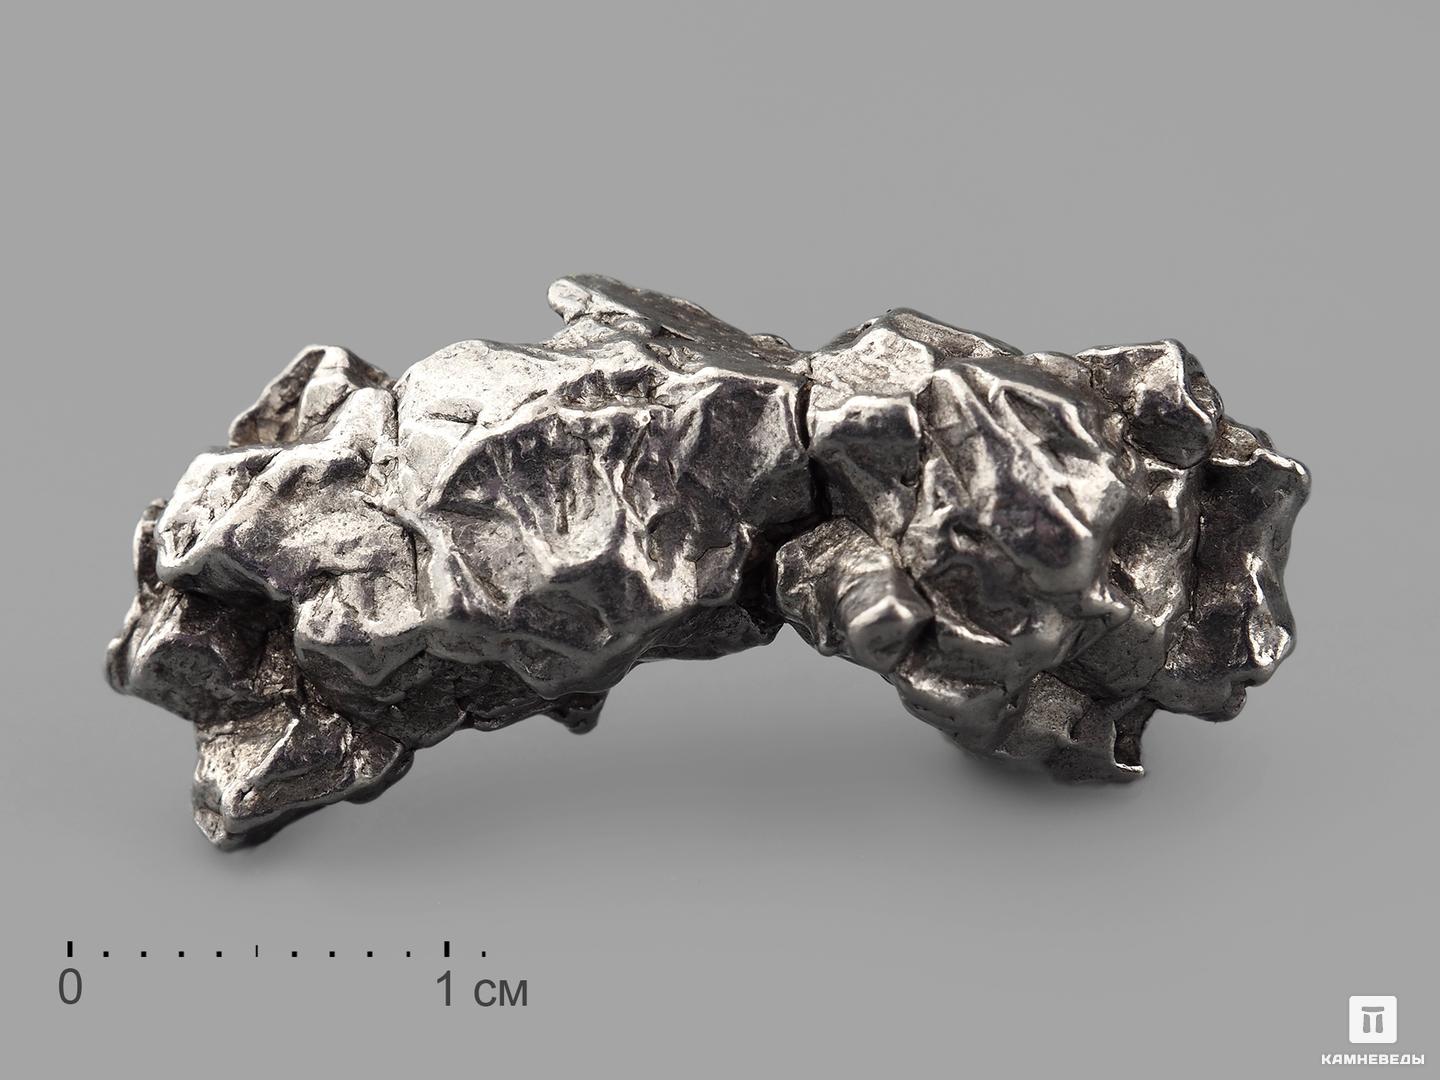 Метеорит Кампо-дель-Сьело, осколок 2,5-3 см (10-12 г) метеорит кампо дель сьело осколок 2 3 5 см 8 10 г